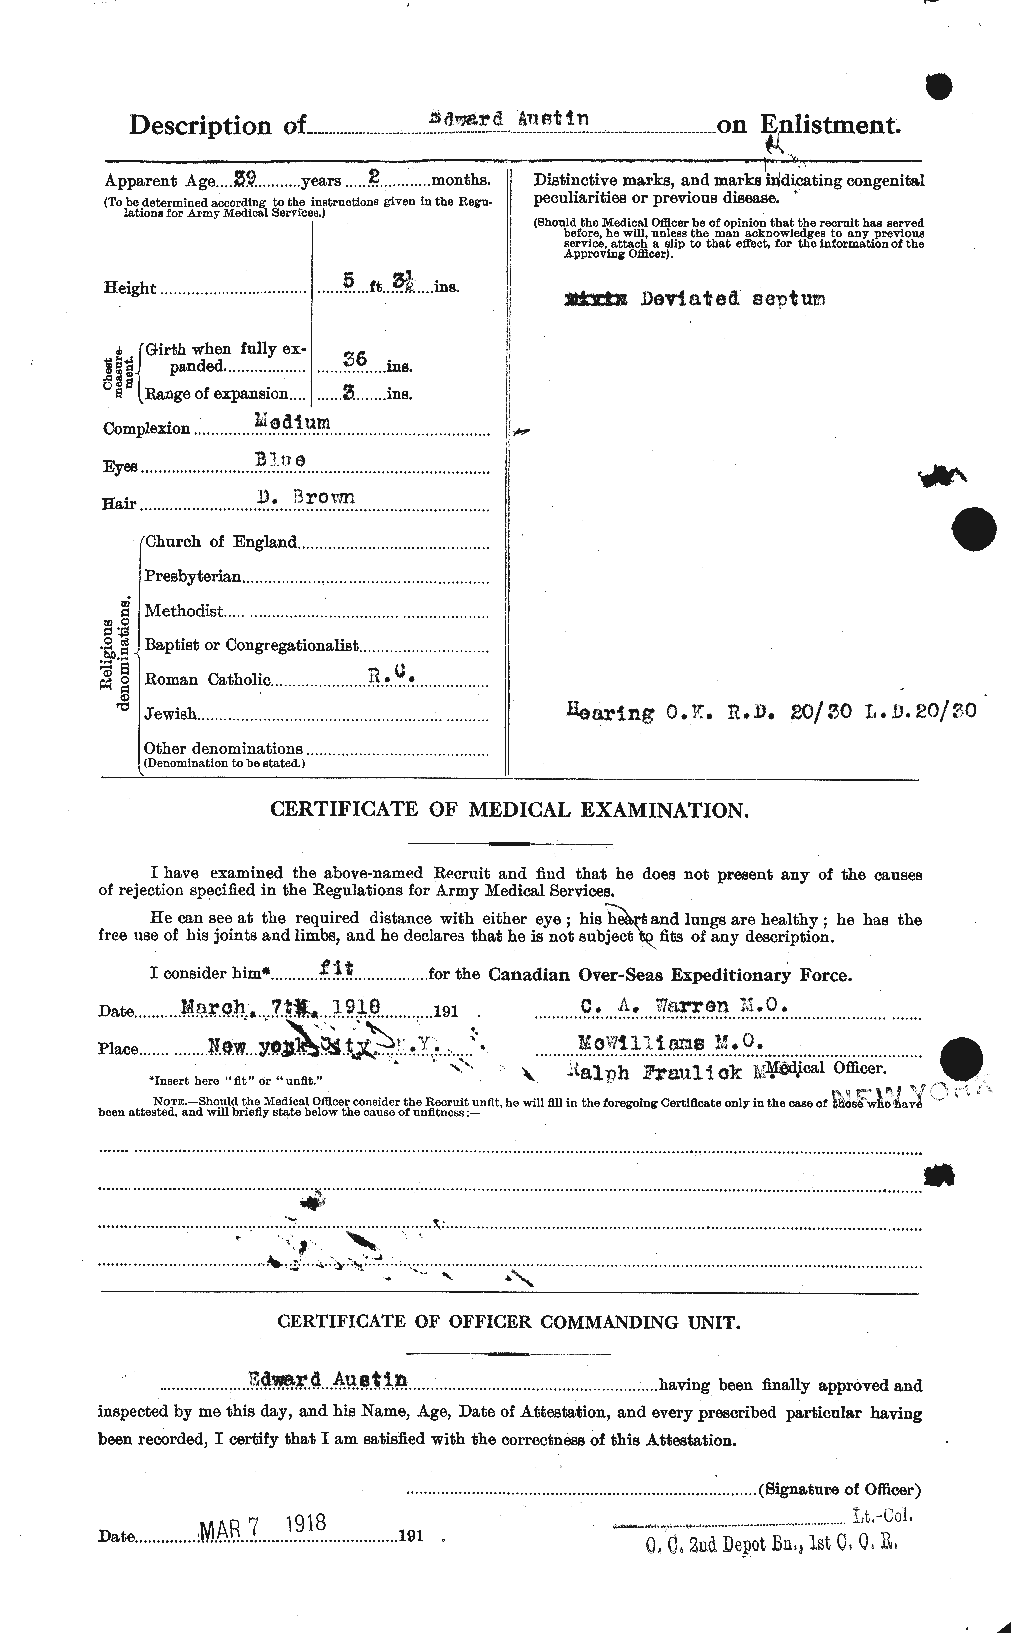 Dossiers du Personnel de la Première Guerre mondiale - CEC 215430b